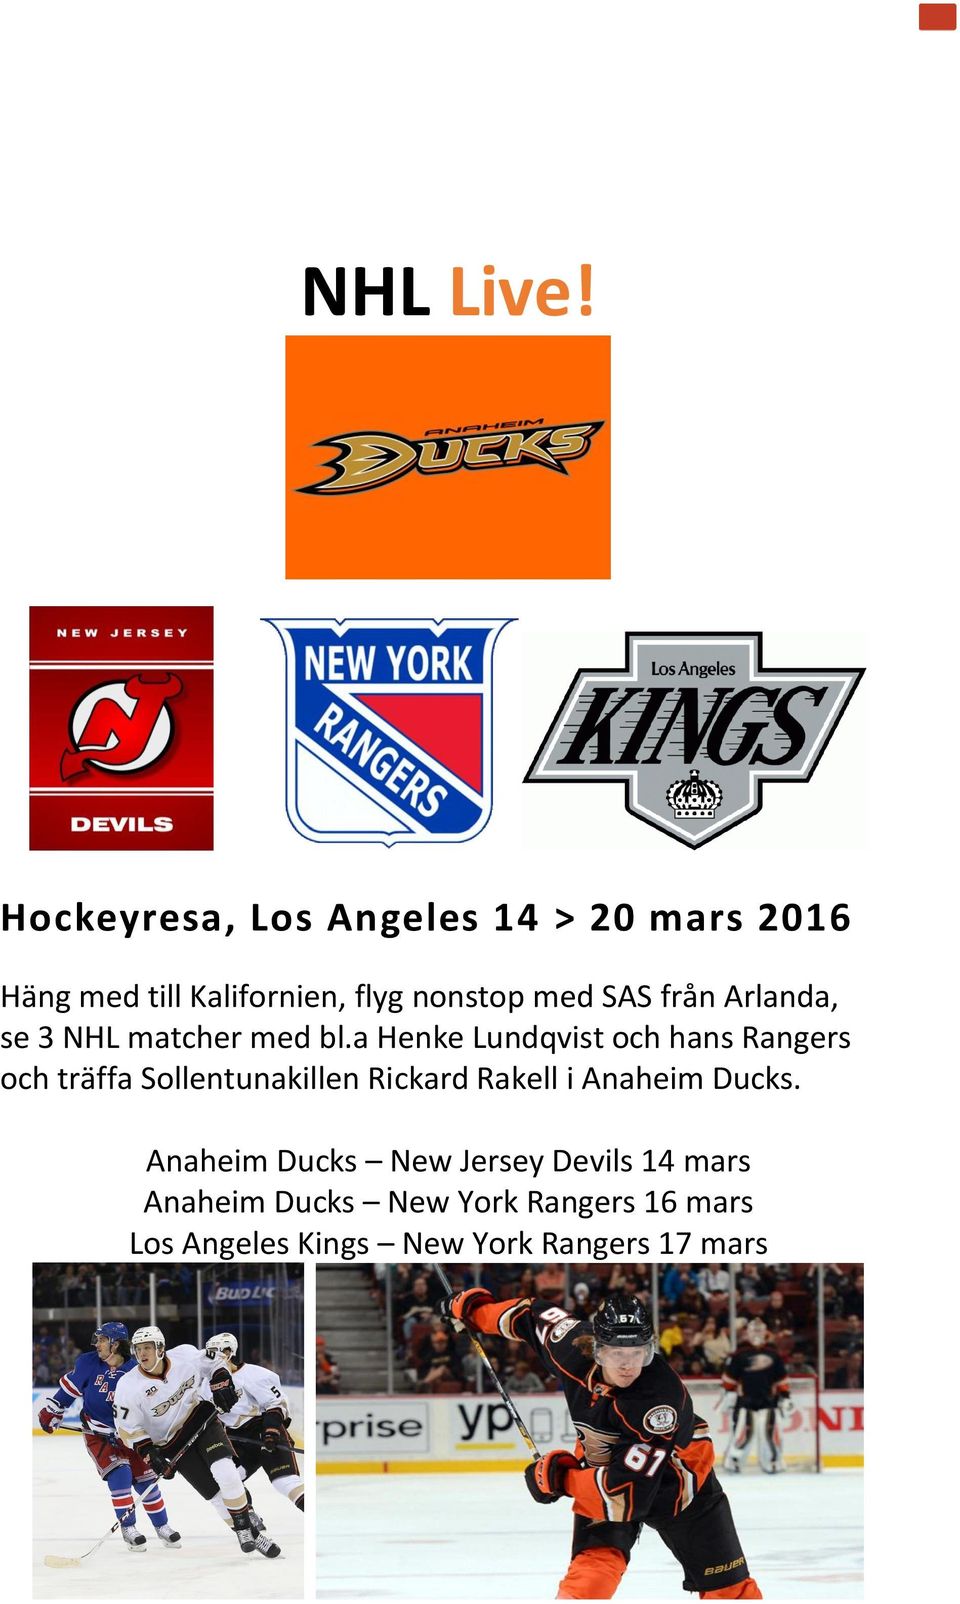 SAS från Arlanda, se 3 NHL matcher med bl.